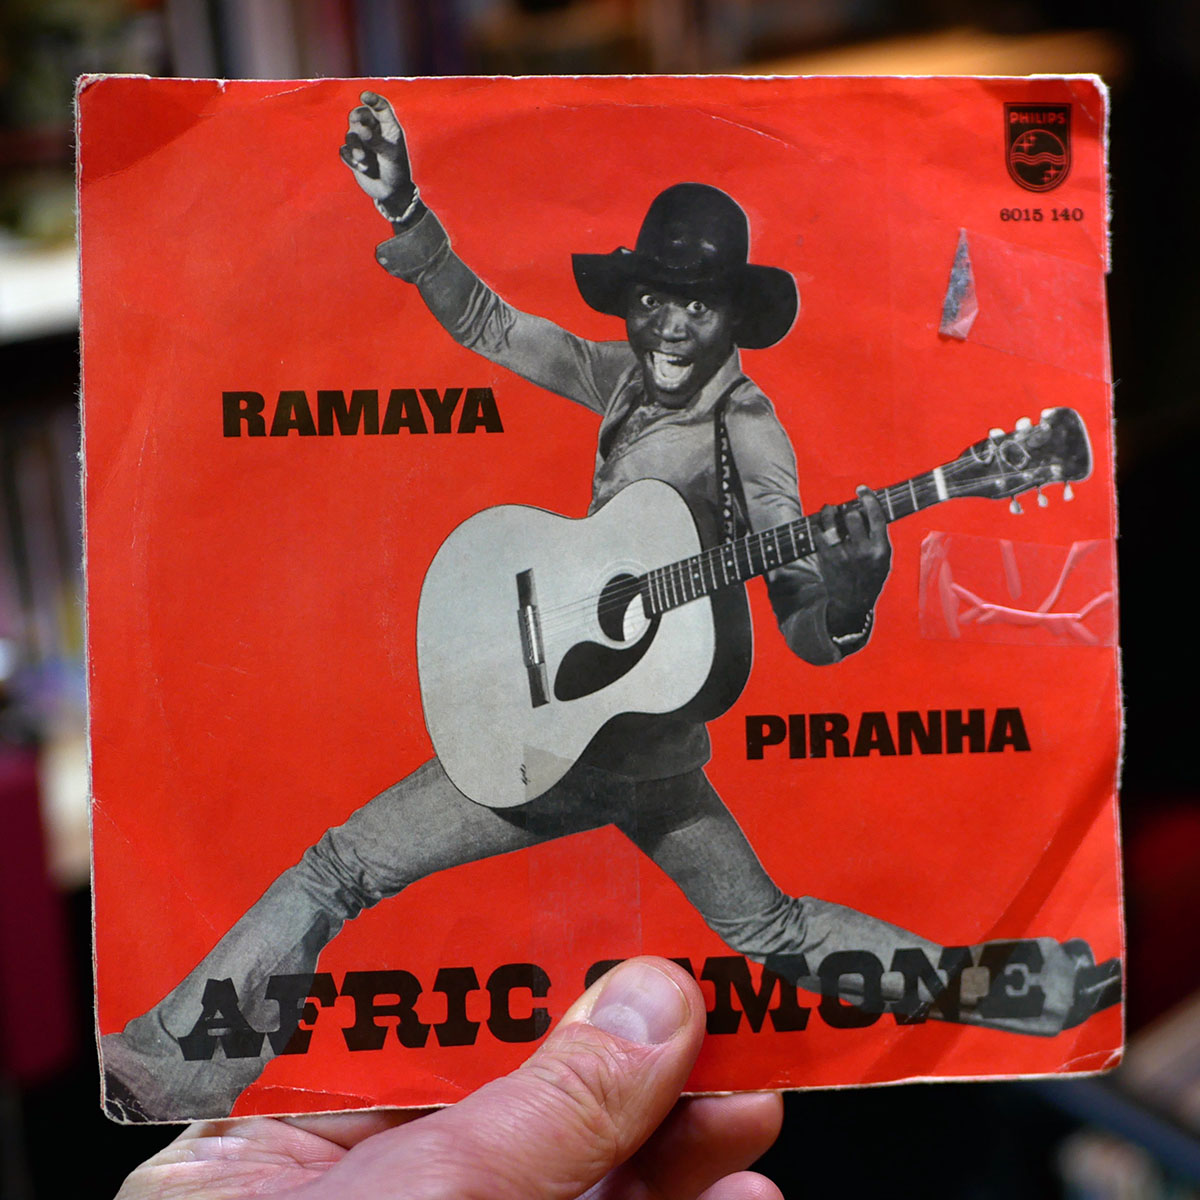 Afric Simone – Ramaya/Piranha [7", 1975]